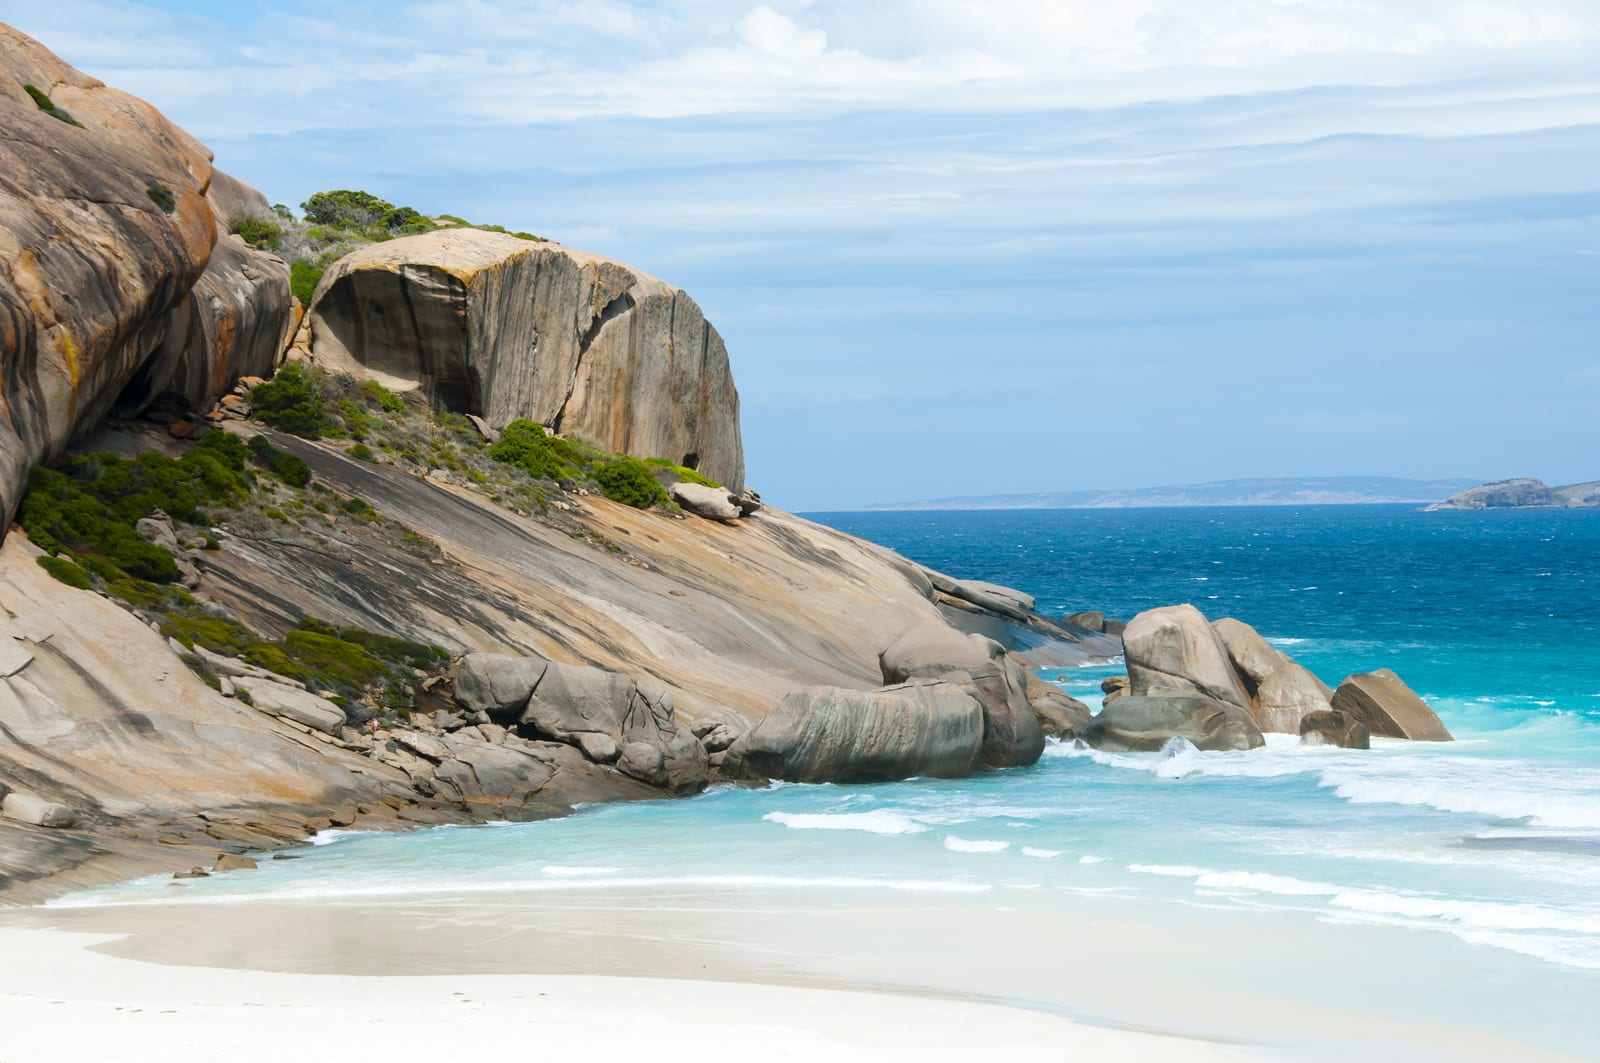 Beach and rocks on an Australian beach